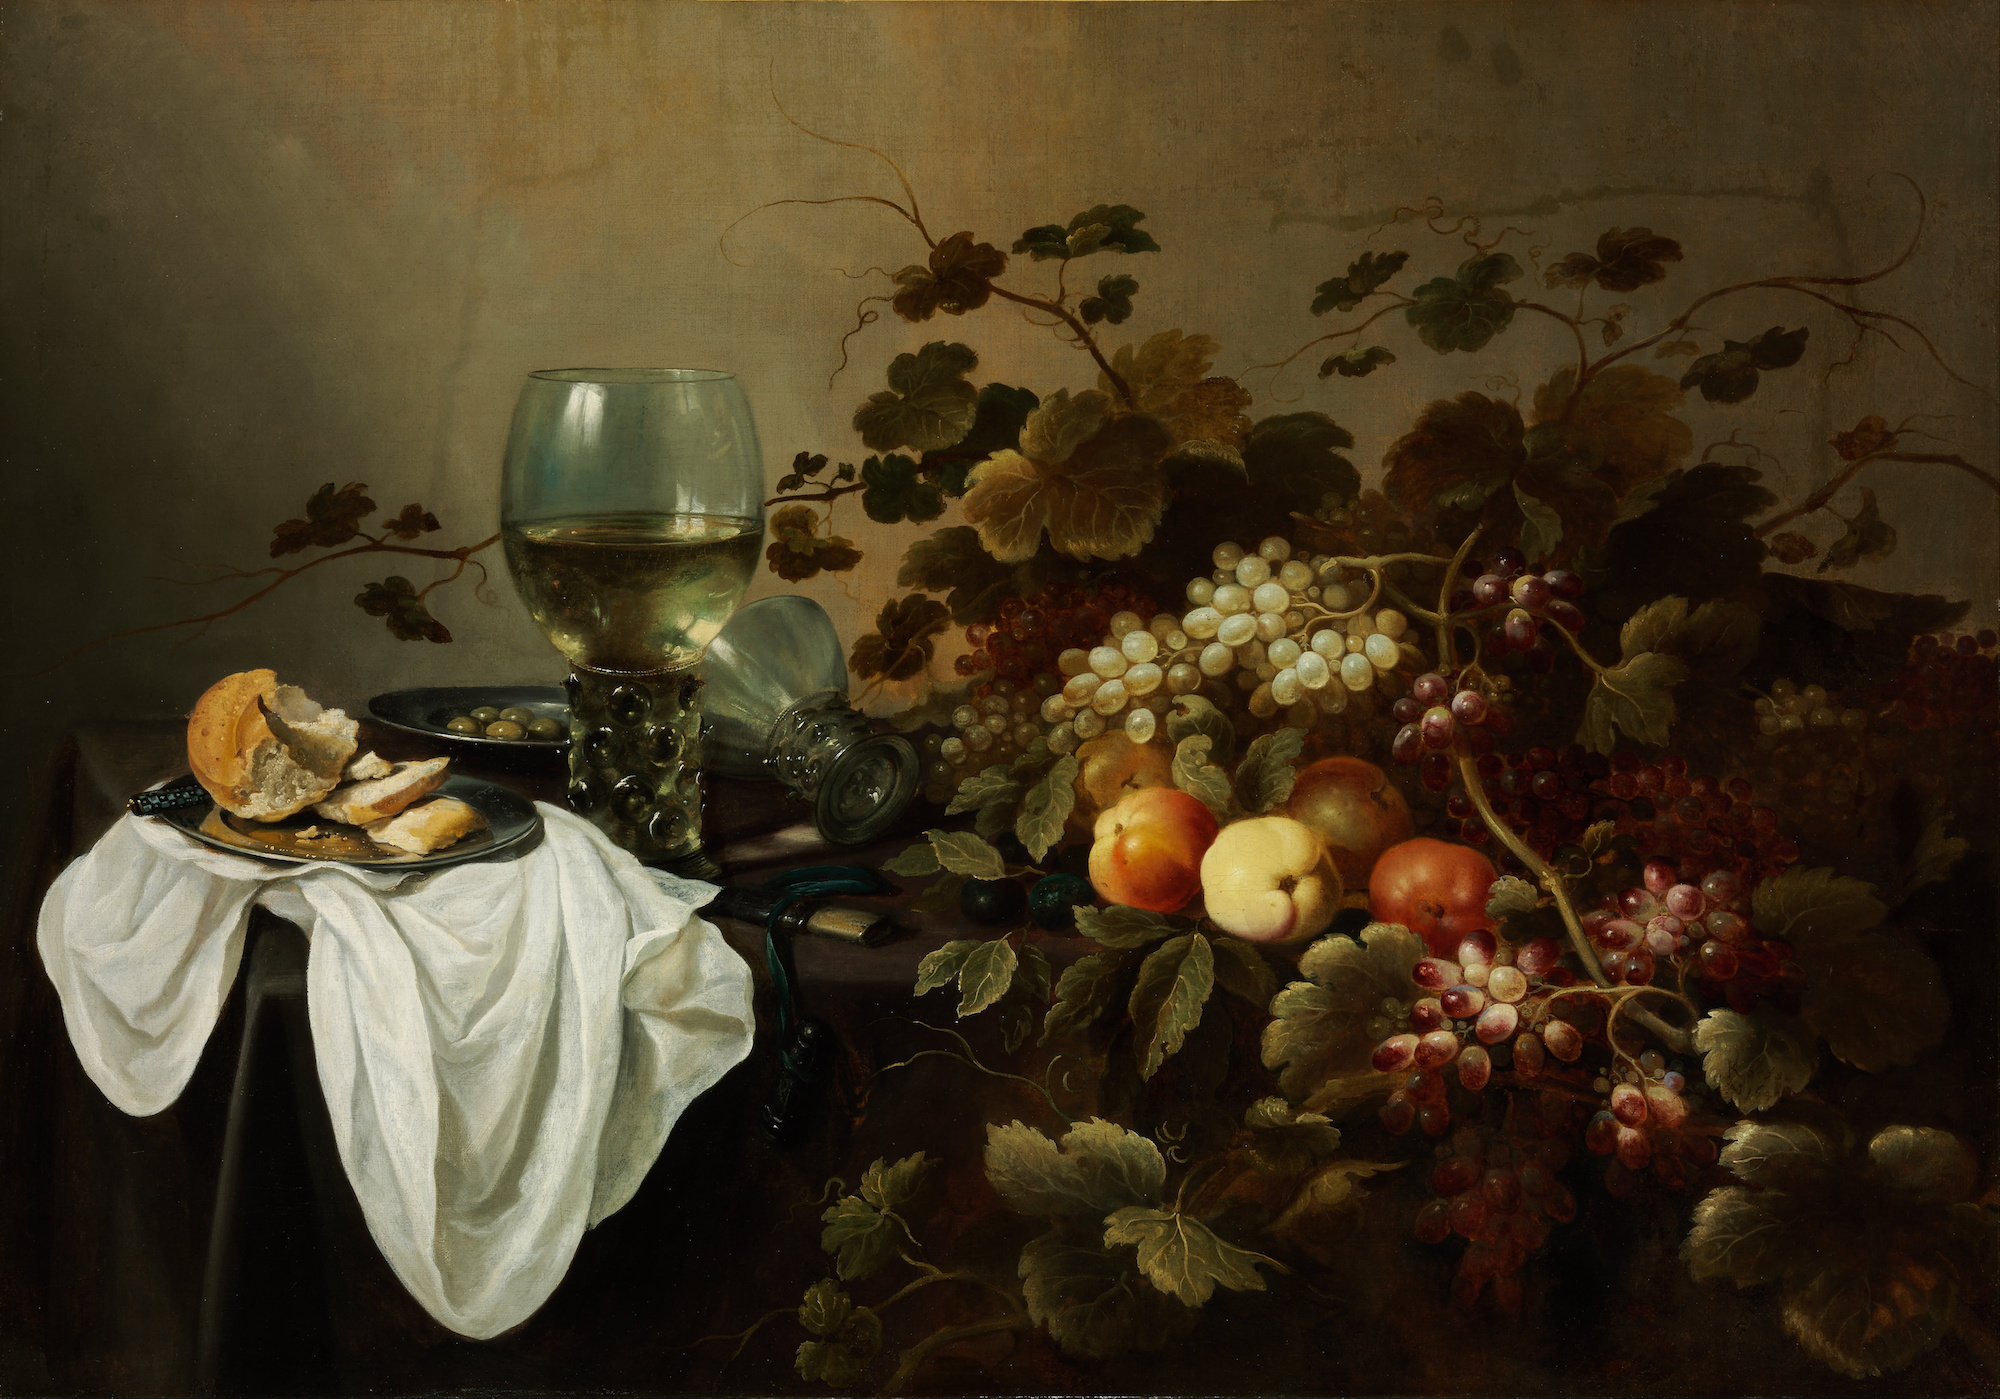 靜物與水果及朗姆 by Pieter Claesz - 1644 - 104.5 x 146 cm 